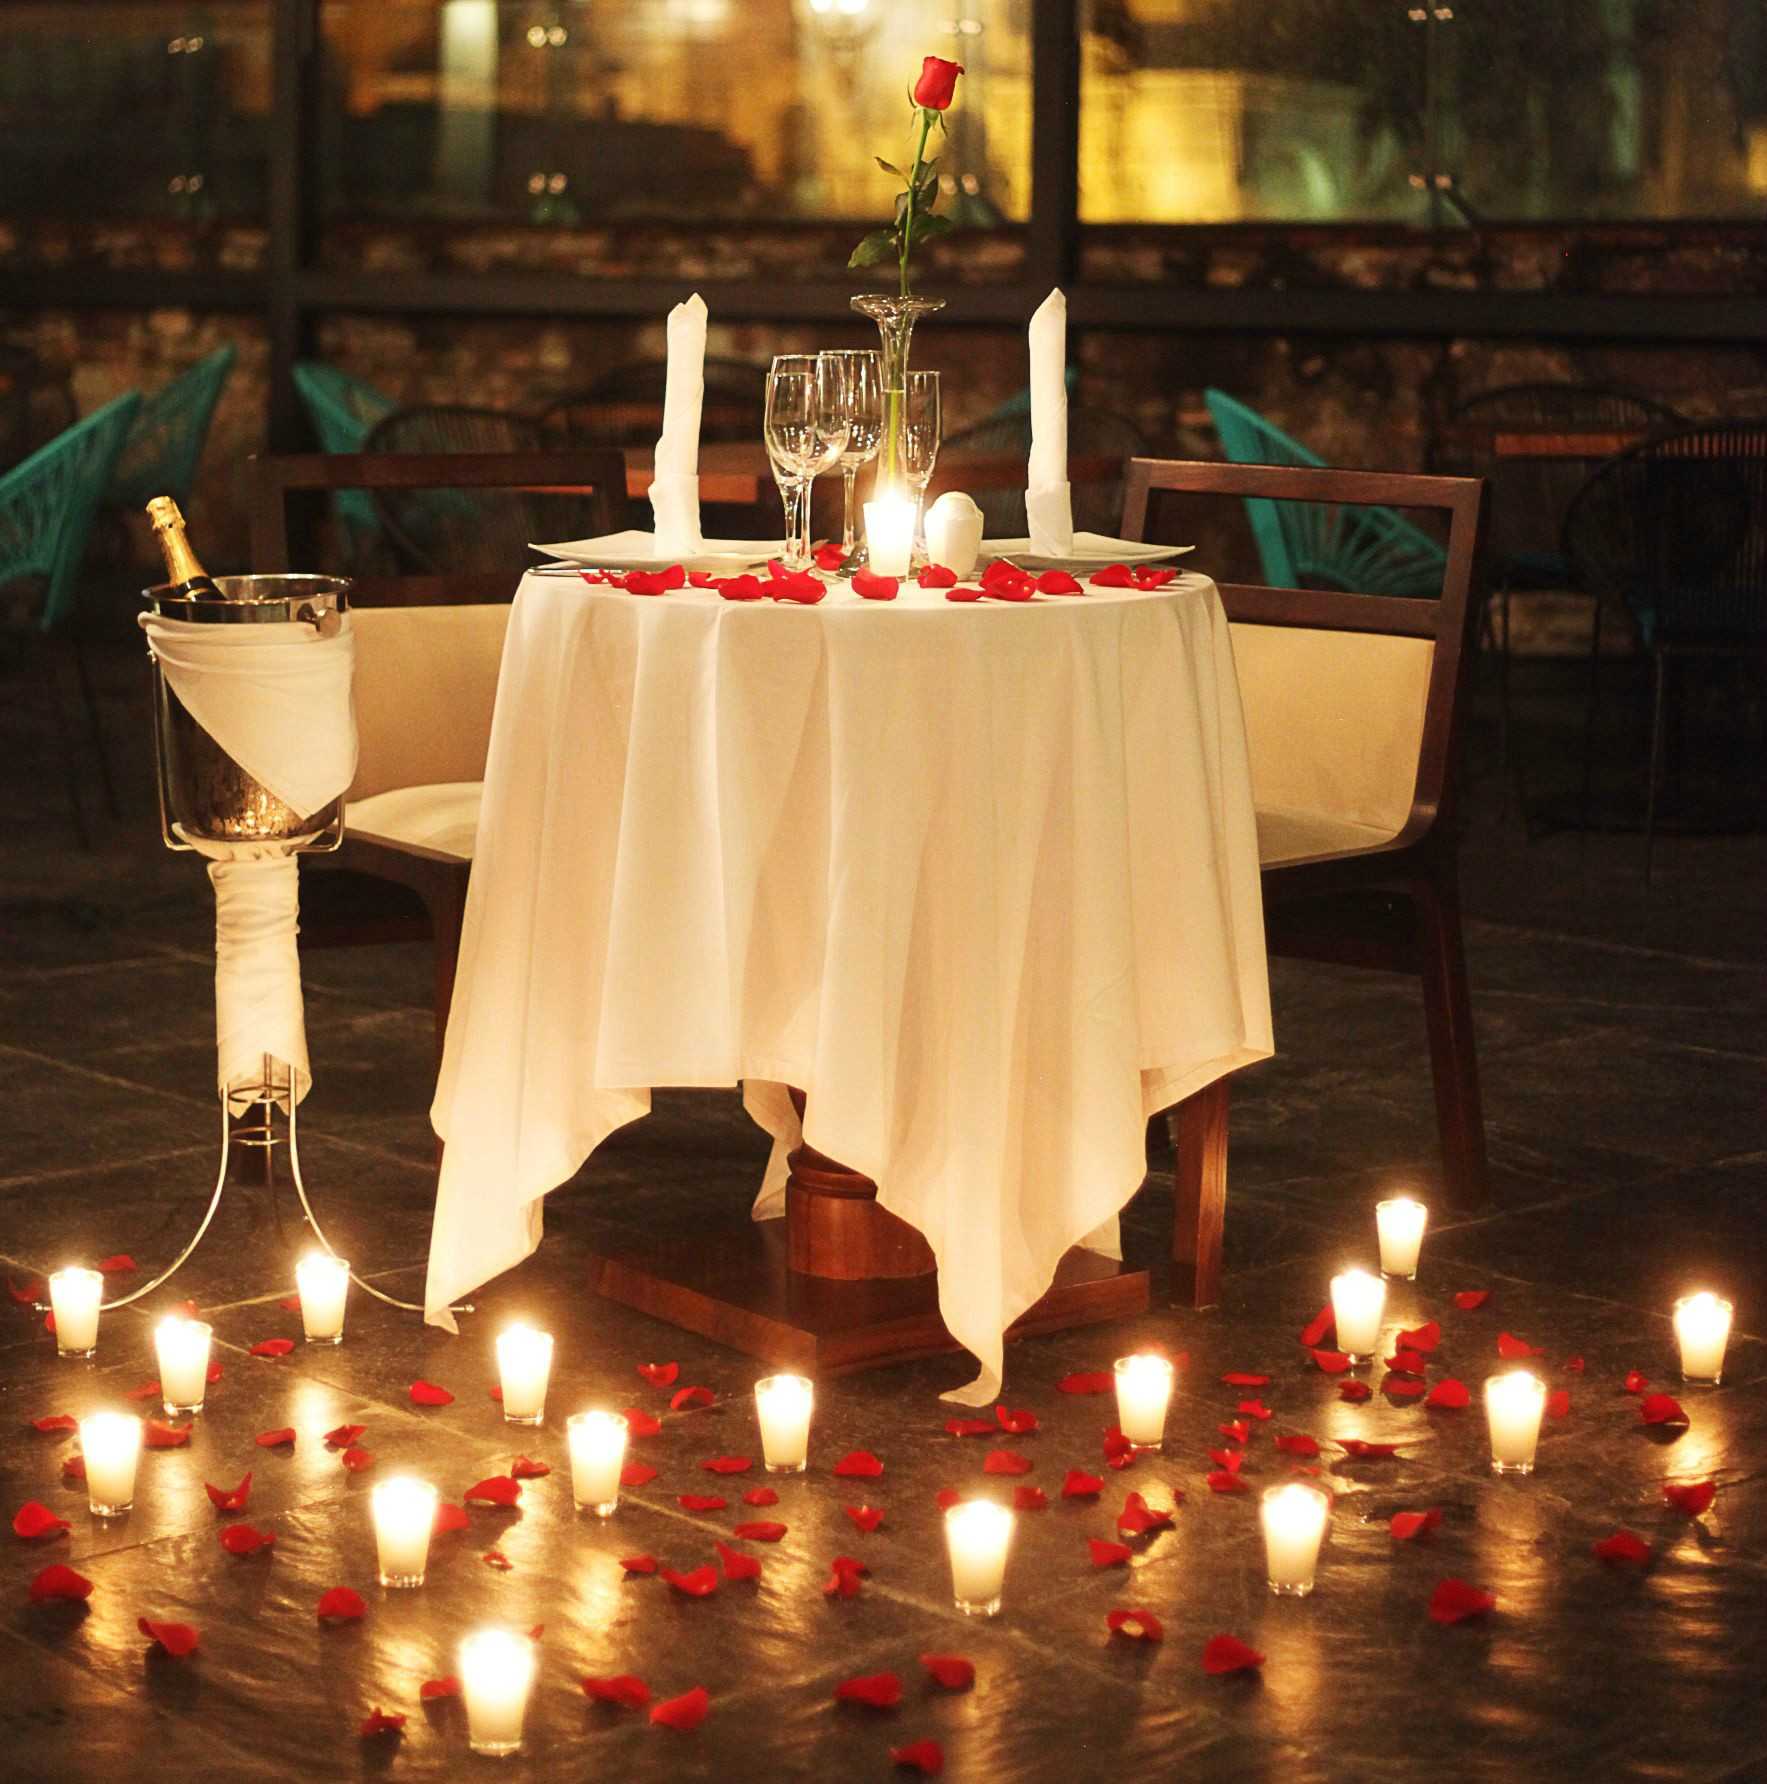 Bữa tối lãng mạn dưới ánh nến mang đến sự thăng hoa đầy cảm xúc